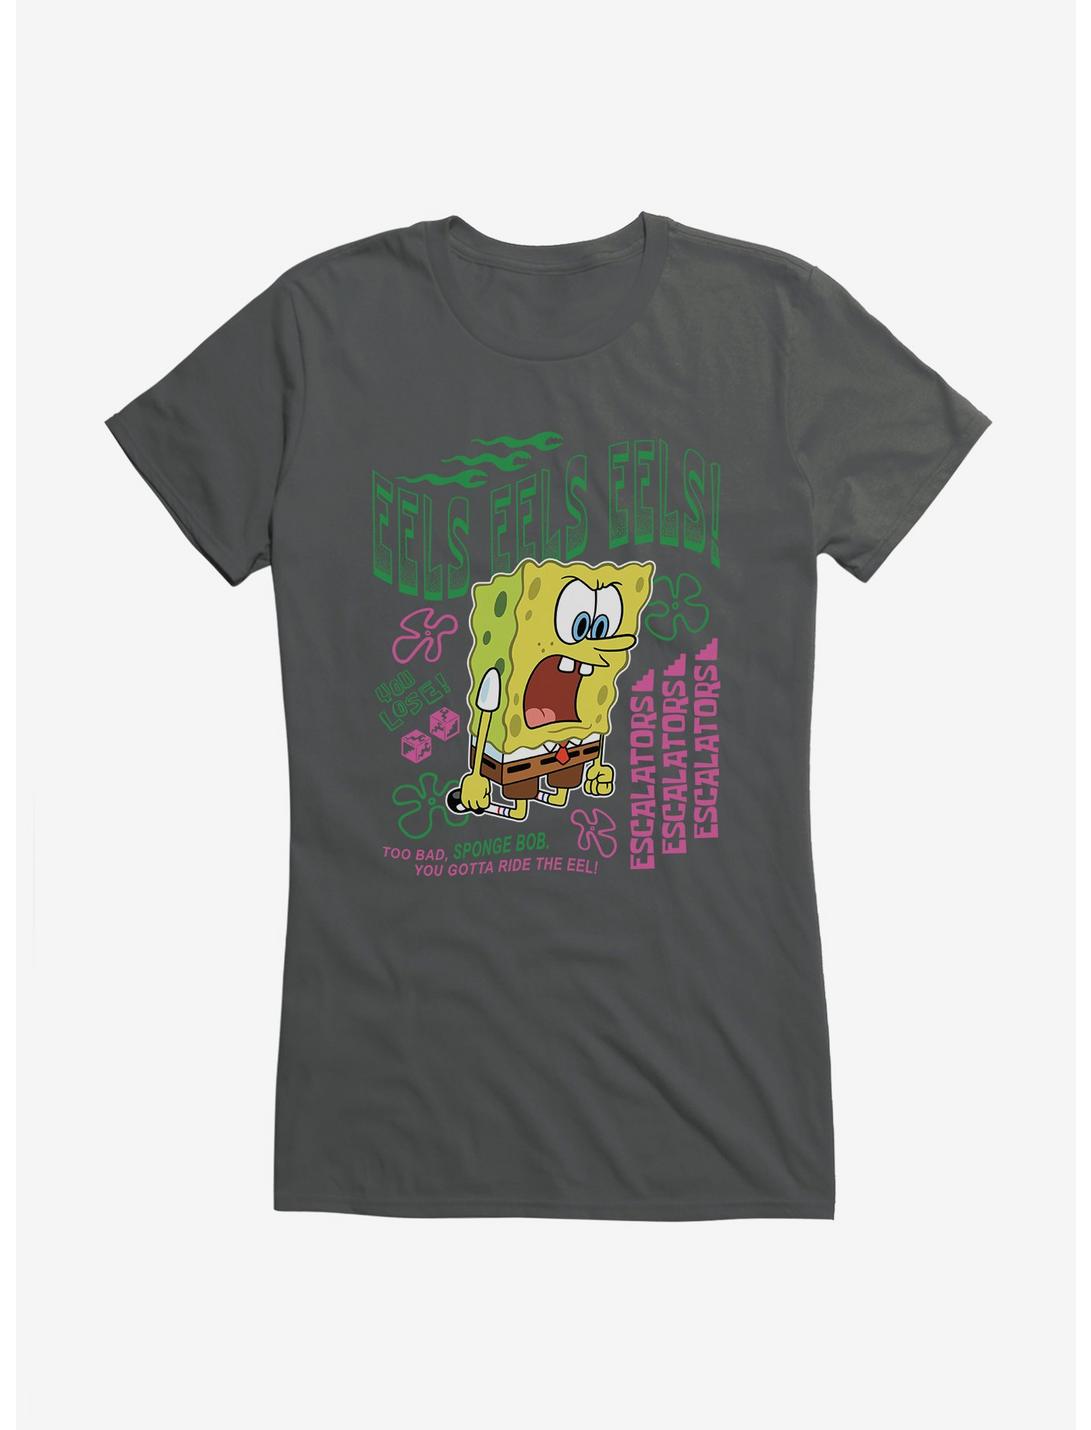 SpongeBob SquarePants Eels Eels Eels Girls T-Shirt, CHARCOAL, hi-res